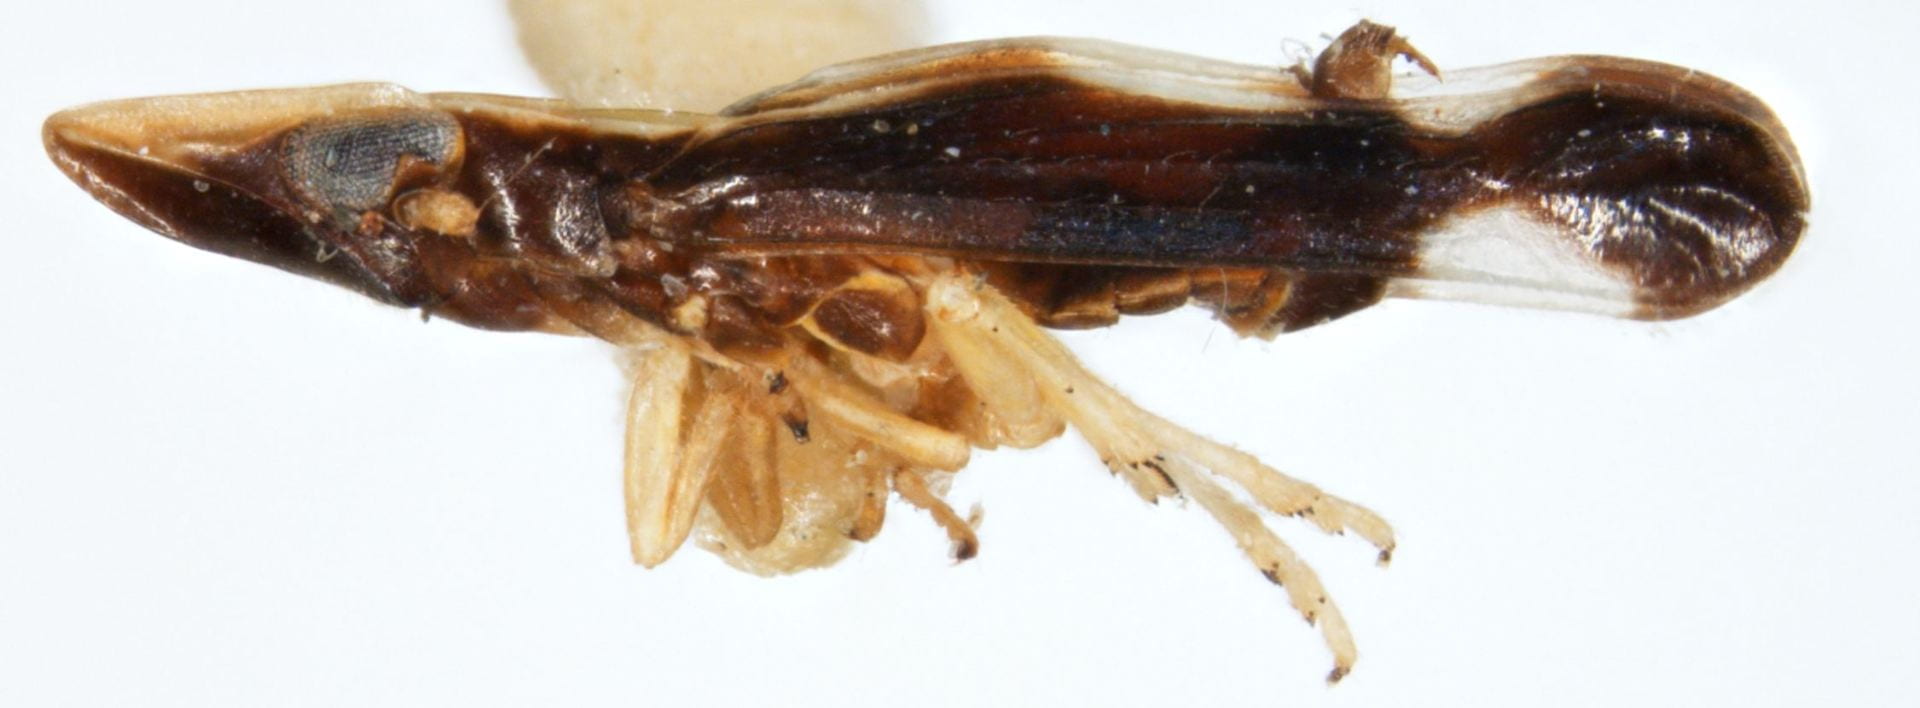 Neomegamelanus penilautus (male)